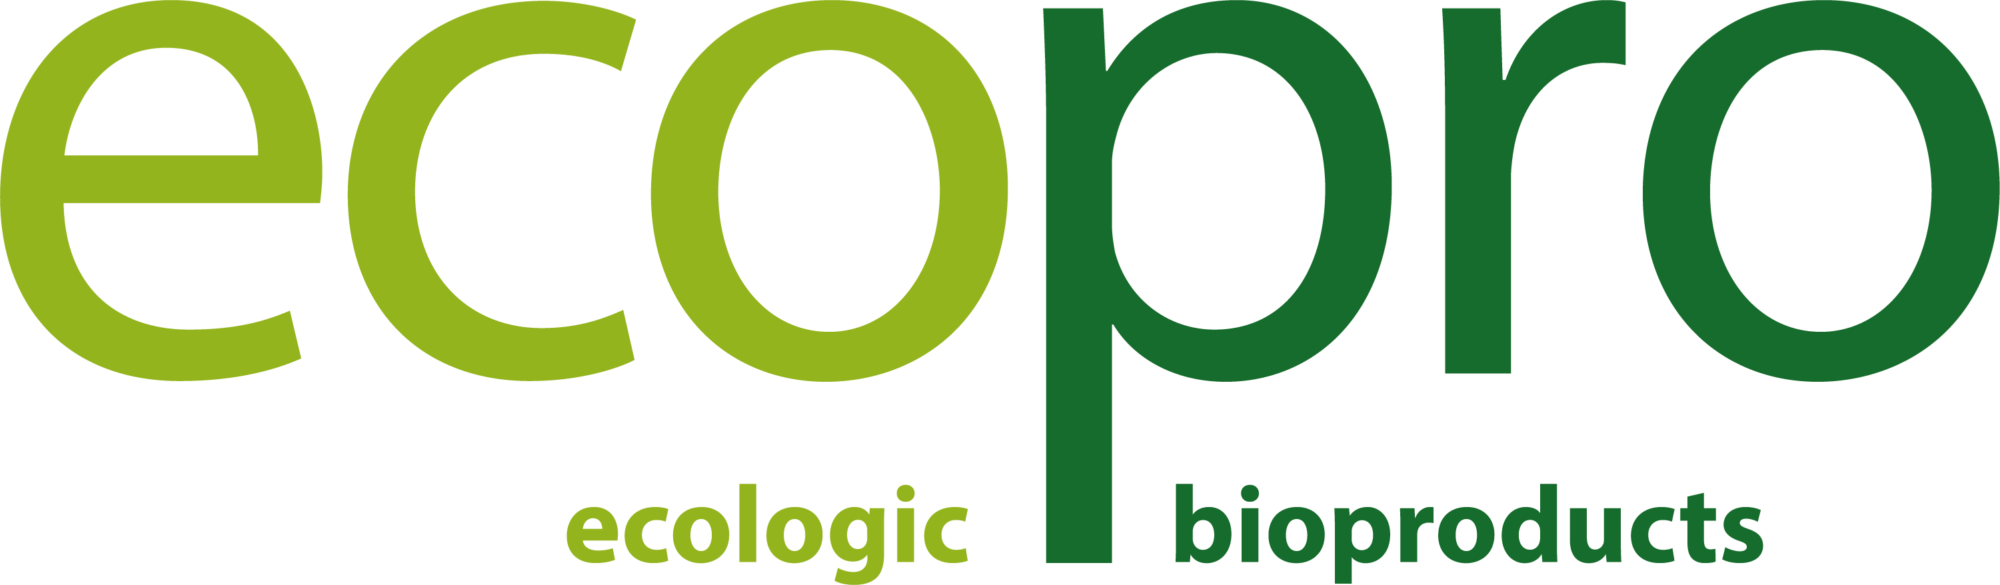 Ecopro_logo